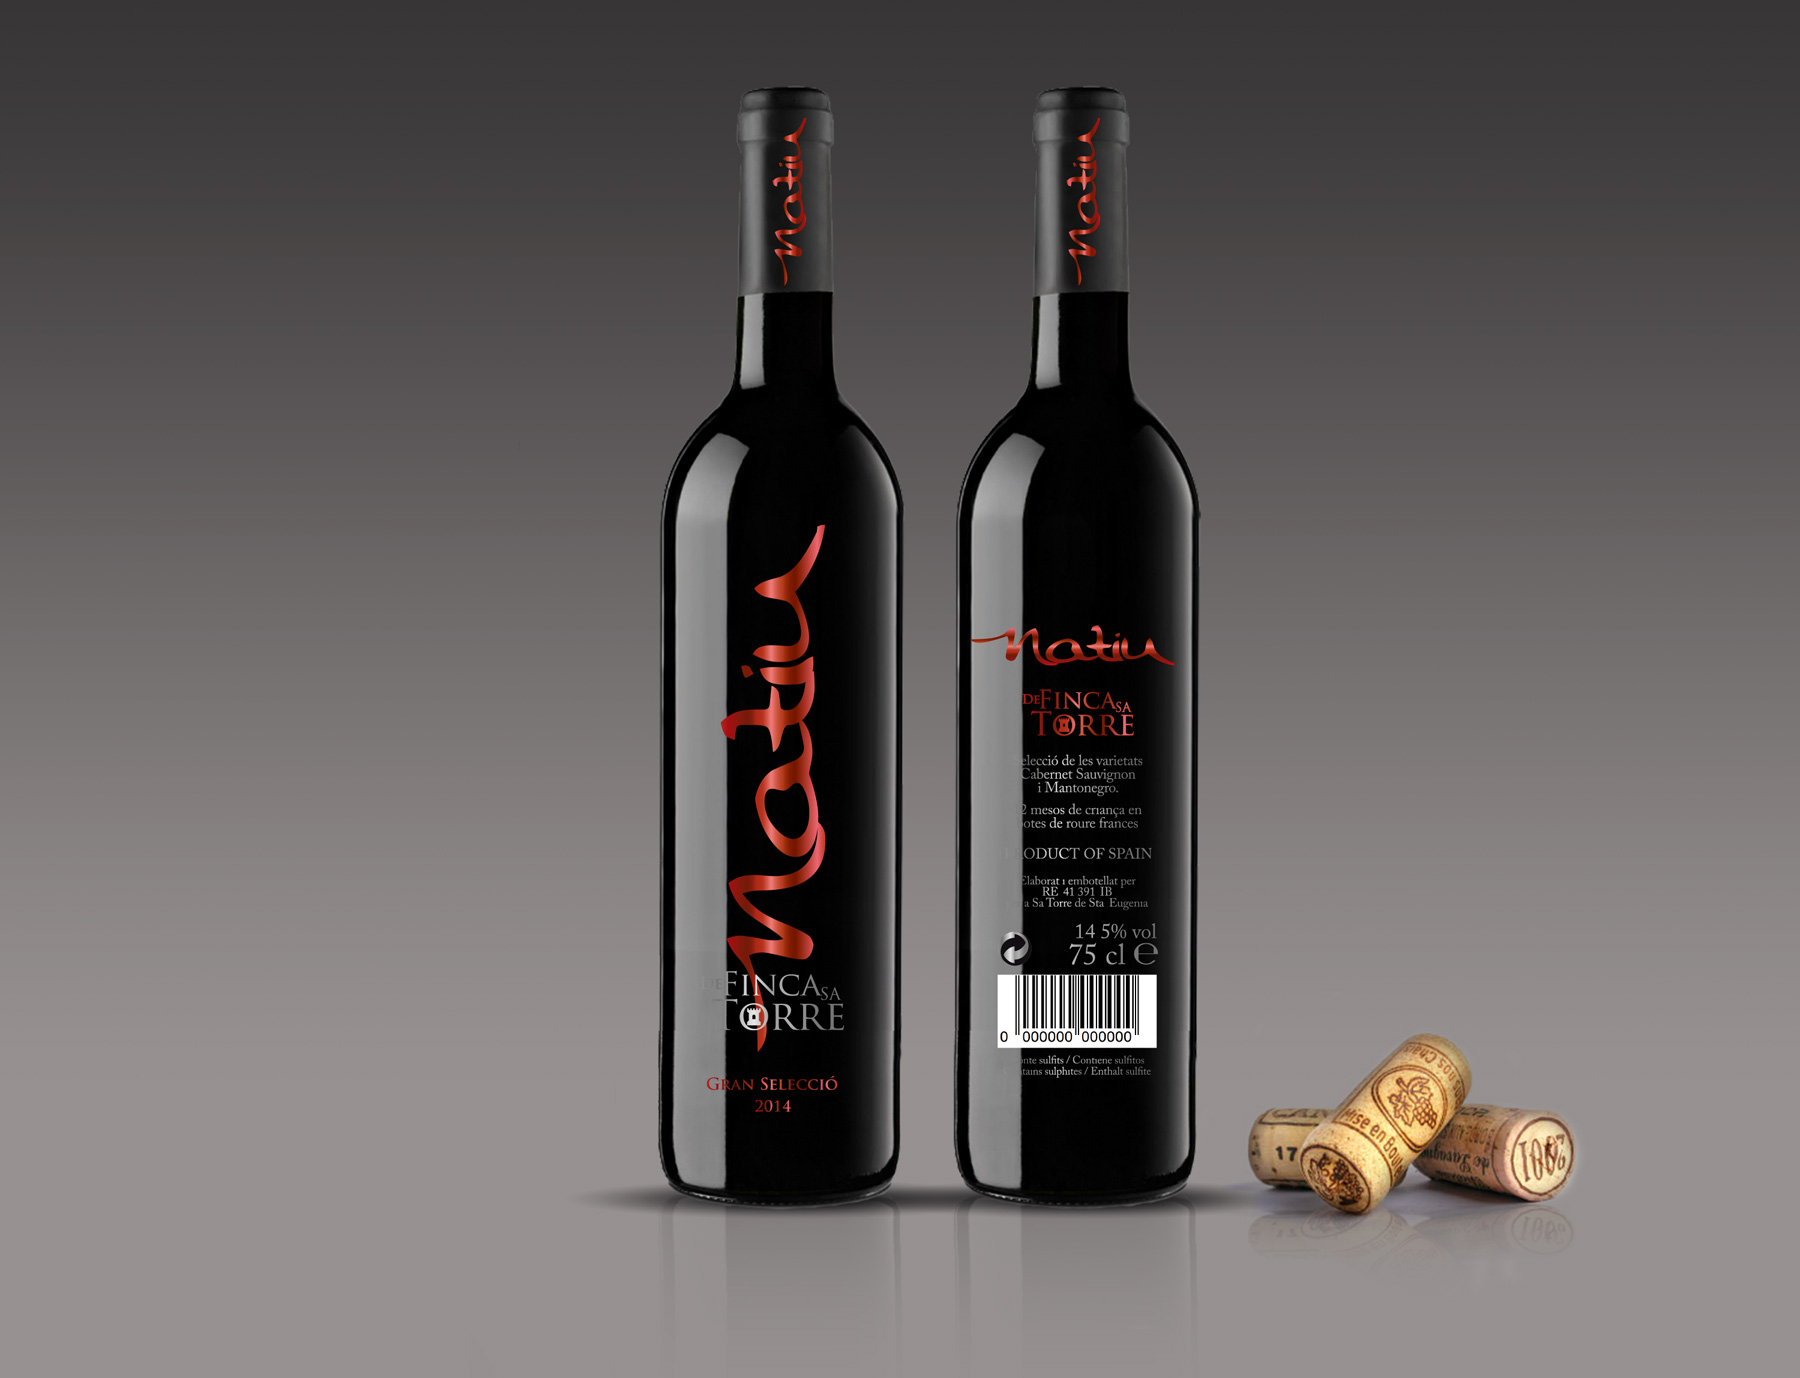 Diseño gráfico y creativo de etiquetas y packaging de vino para tinto NATIU DE FINCA SA TORRE